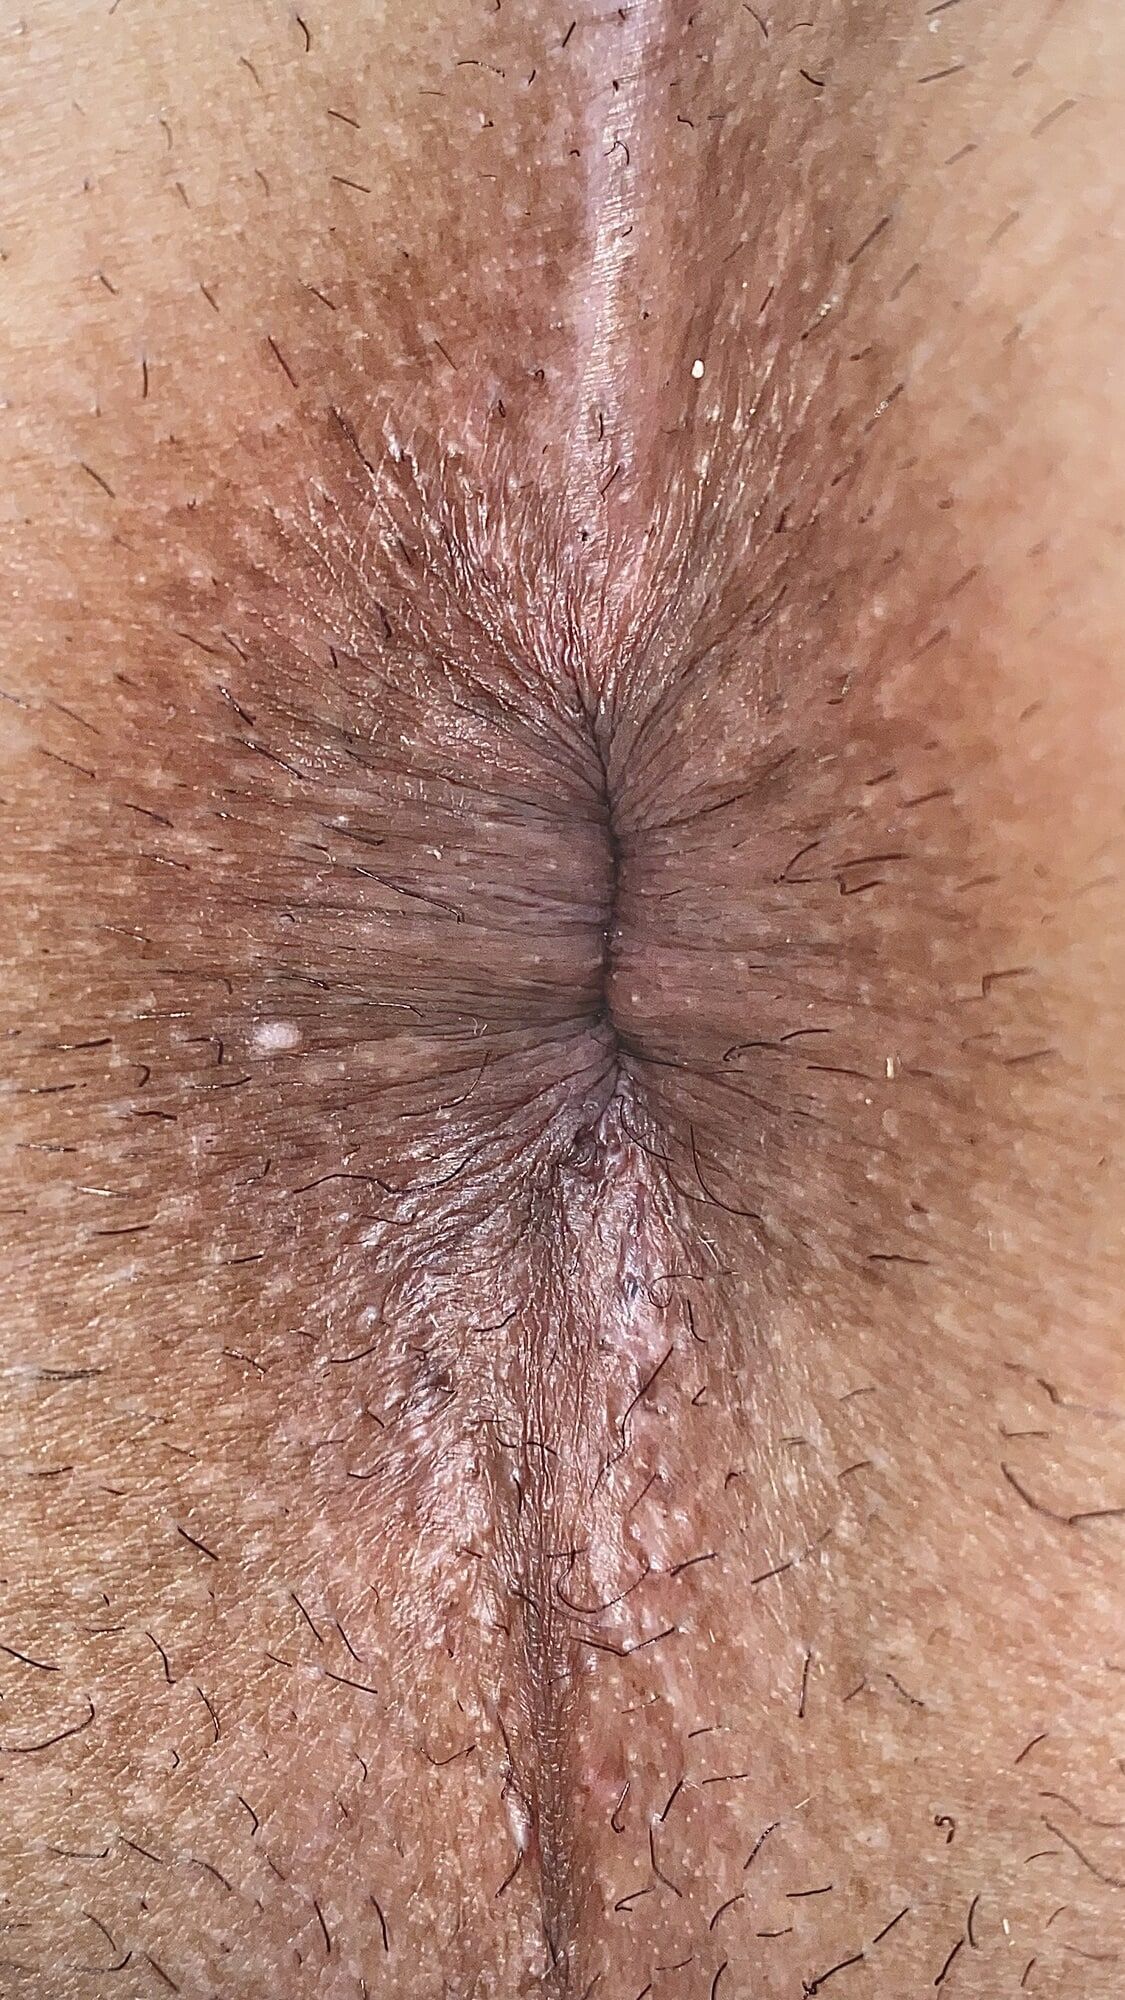 Close-up of a man's anus